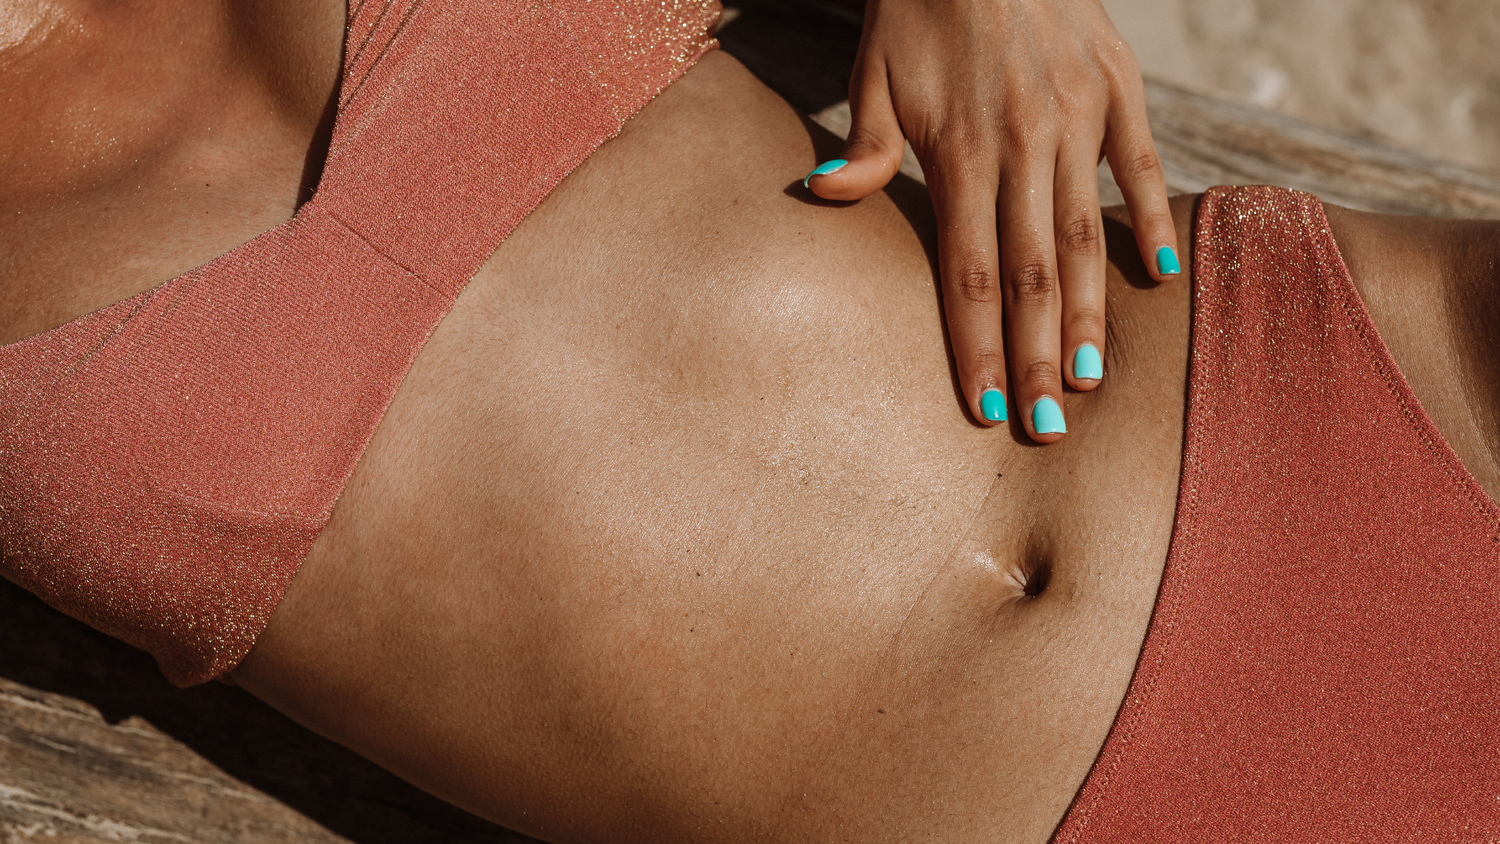 corps d'une femme bronzée avec un maillot de bain terracotta se touchant le vendre avec sa main gauche dont les ongles sont vernis bleu pastel